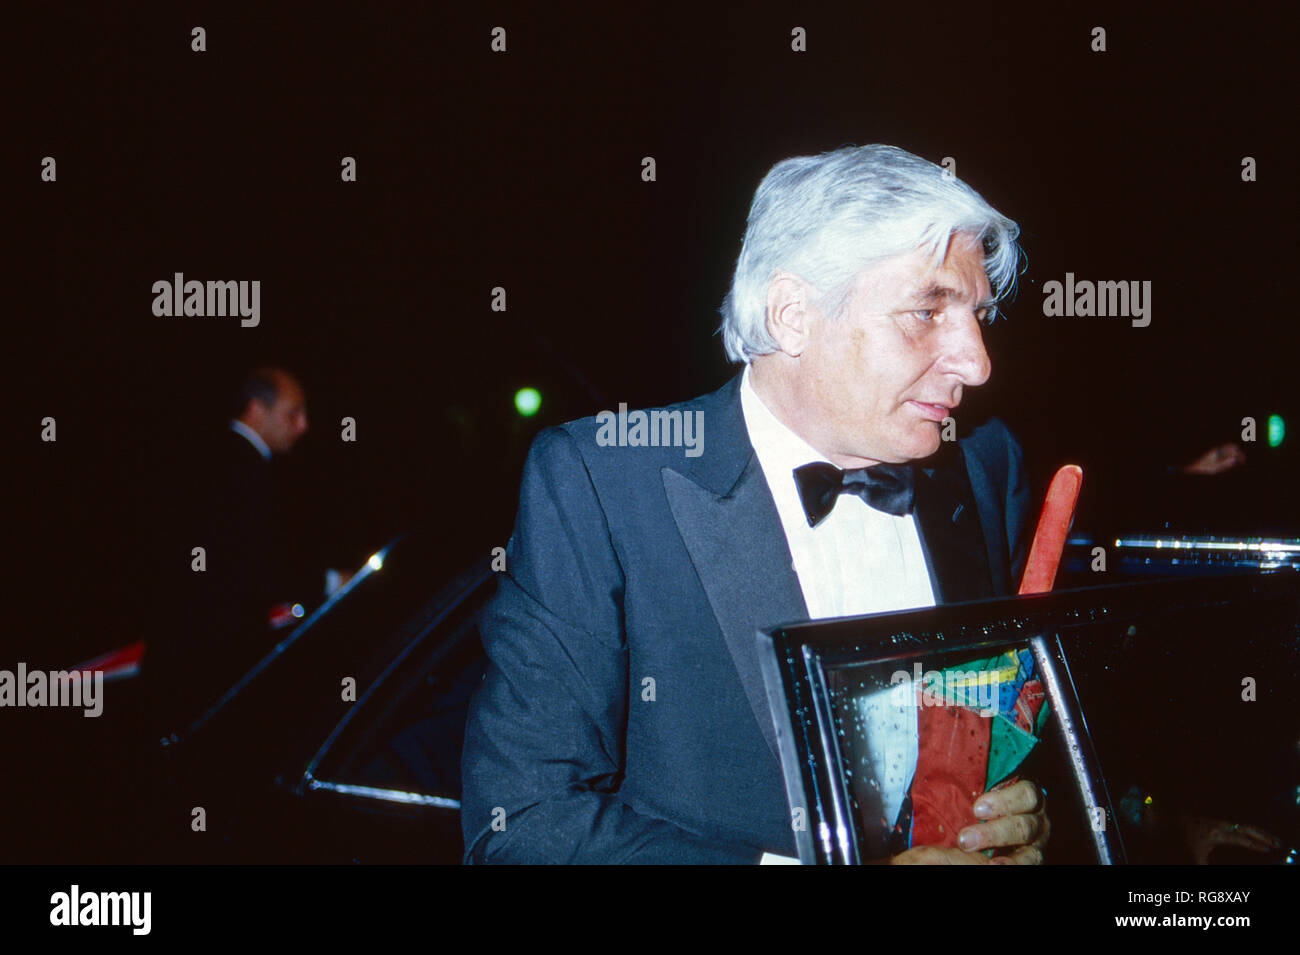 Industriellenerbe Gunter Sachs bei einer Abendveranstaltung, ca. 1986. Entrepreneur Gunter Sachs attending an evening event, ca. 1986. Stock Photo